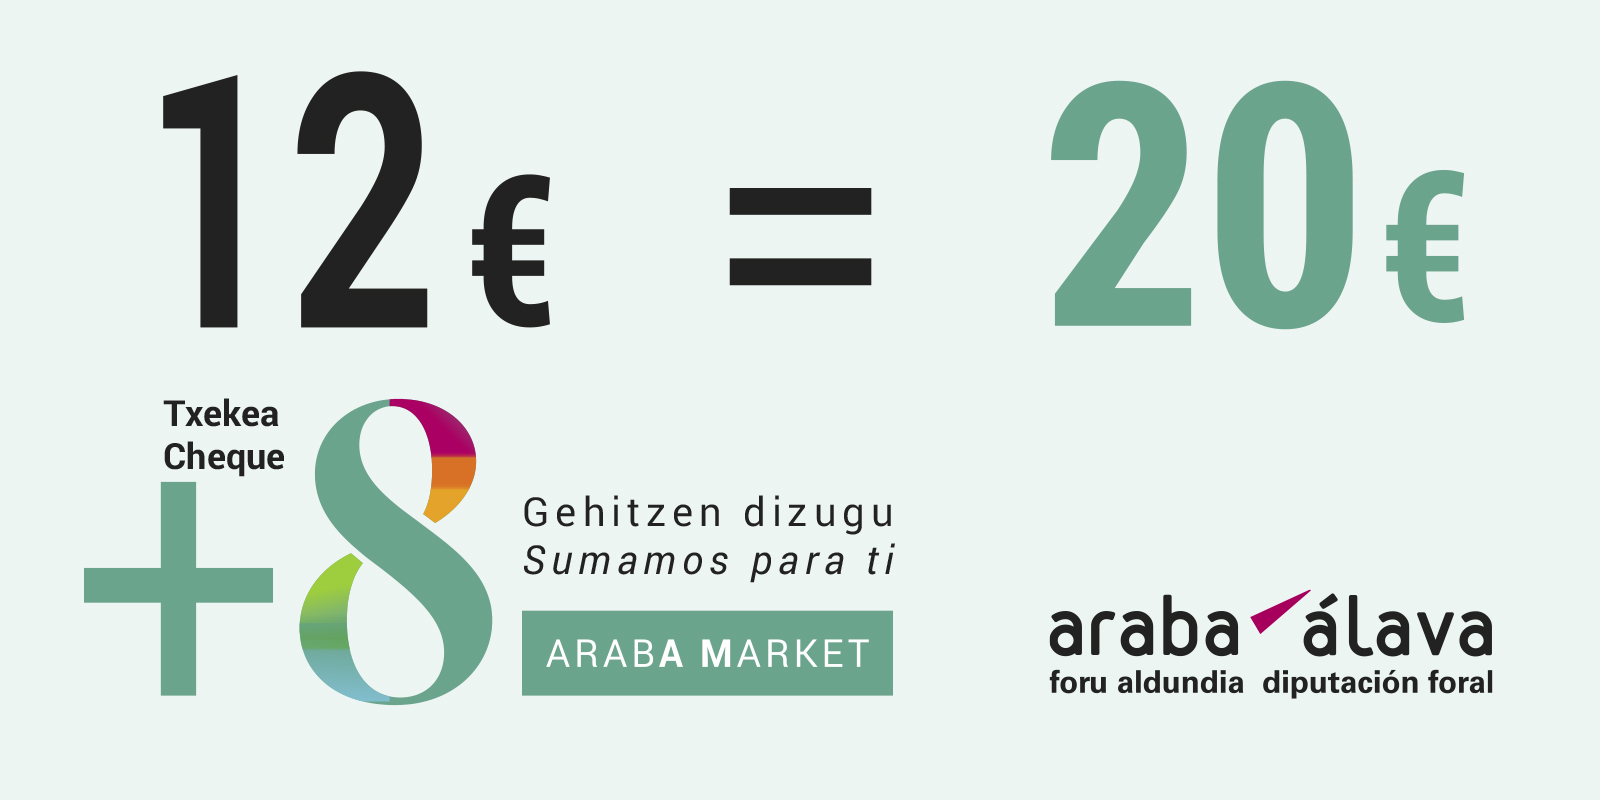 Araba Market +8 txekeak 12 euros kostatzen zaizu, eta 20 euroko erosketak dituzu